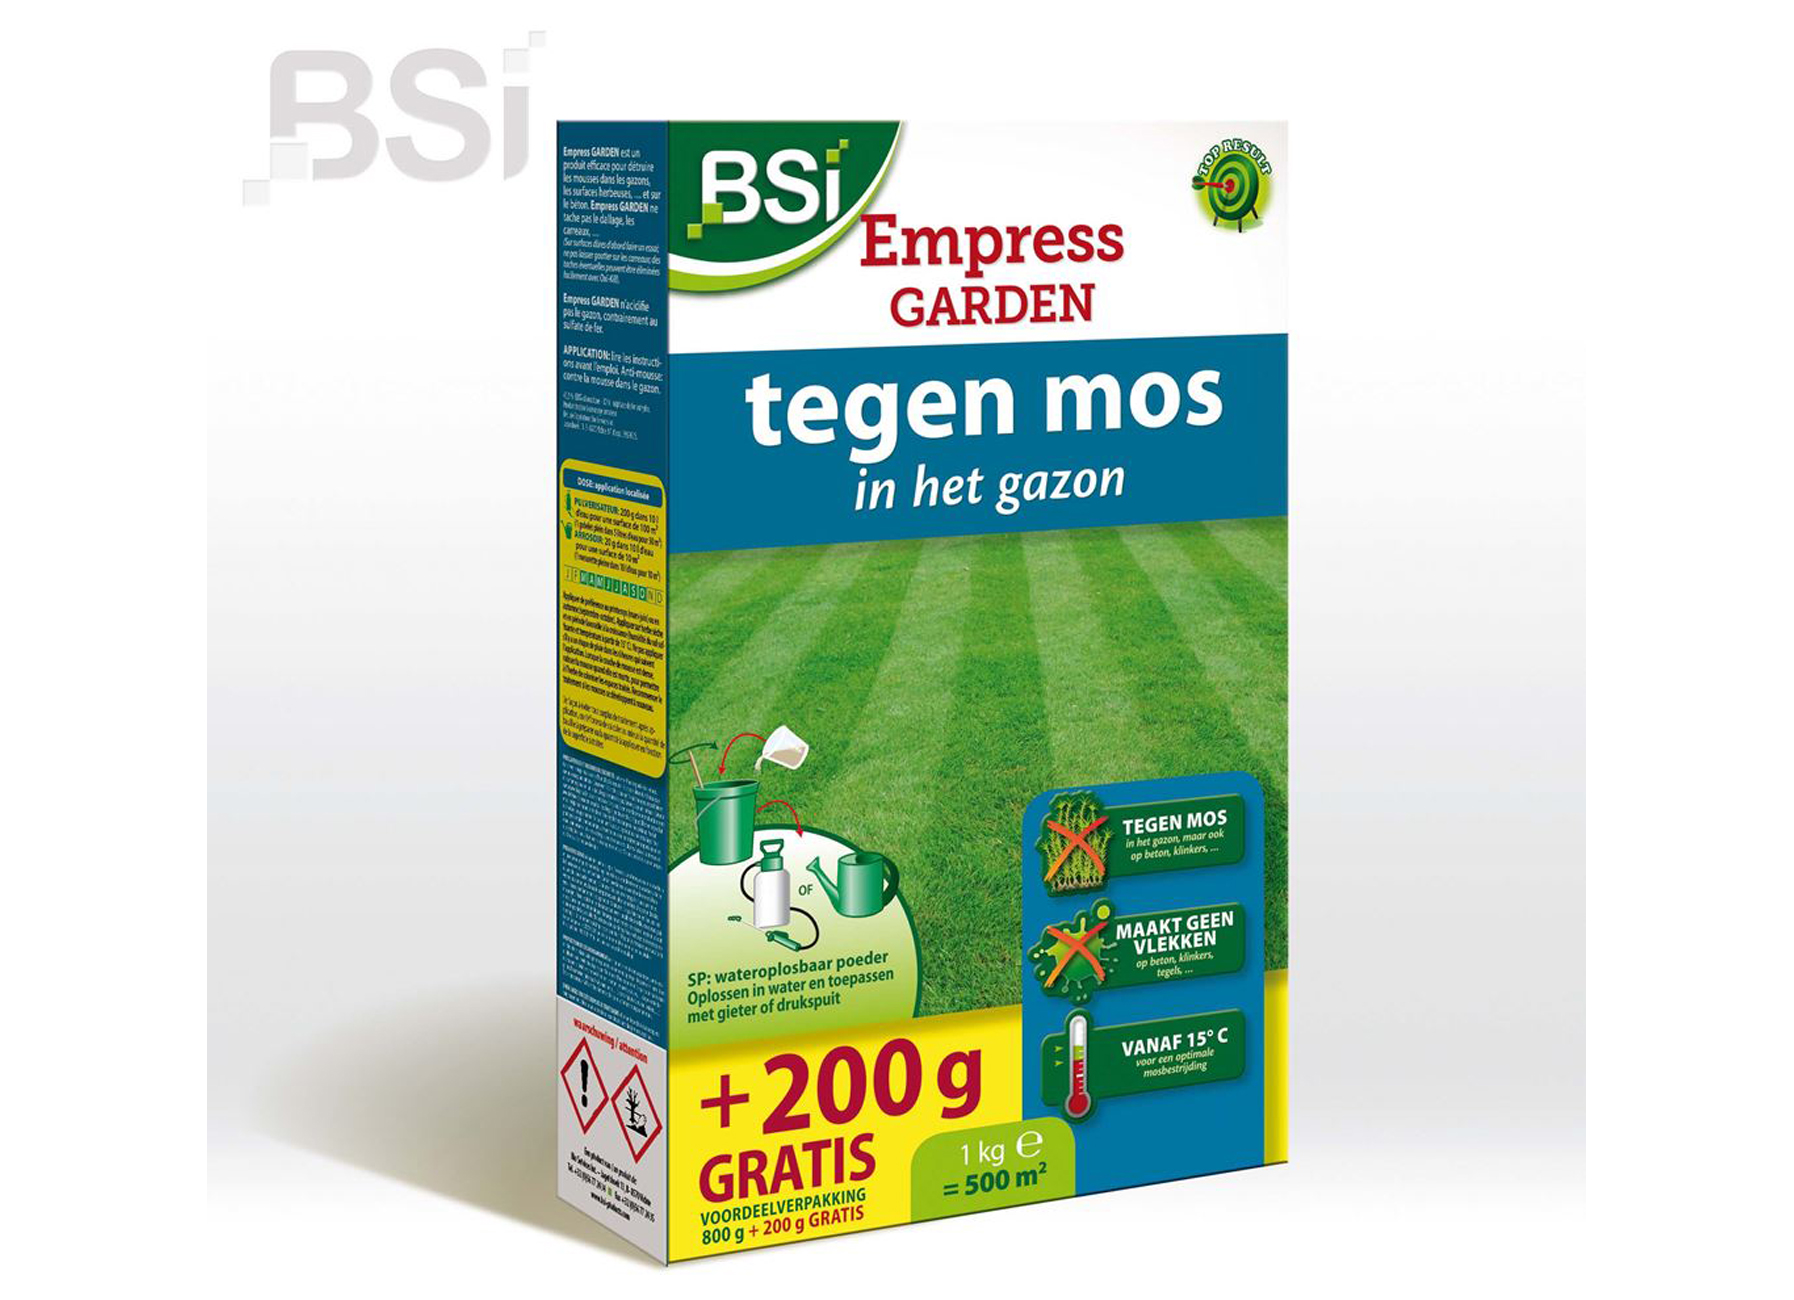 BSI EMPRESS GARDEN 800+200G GRATUIT